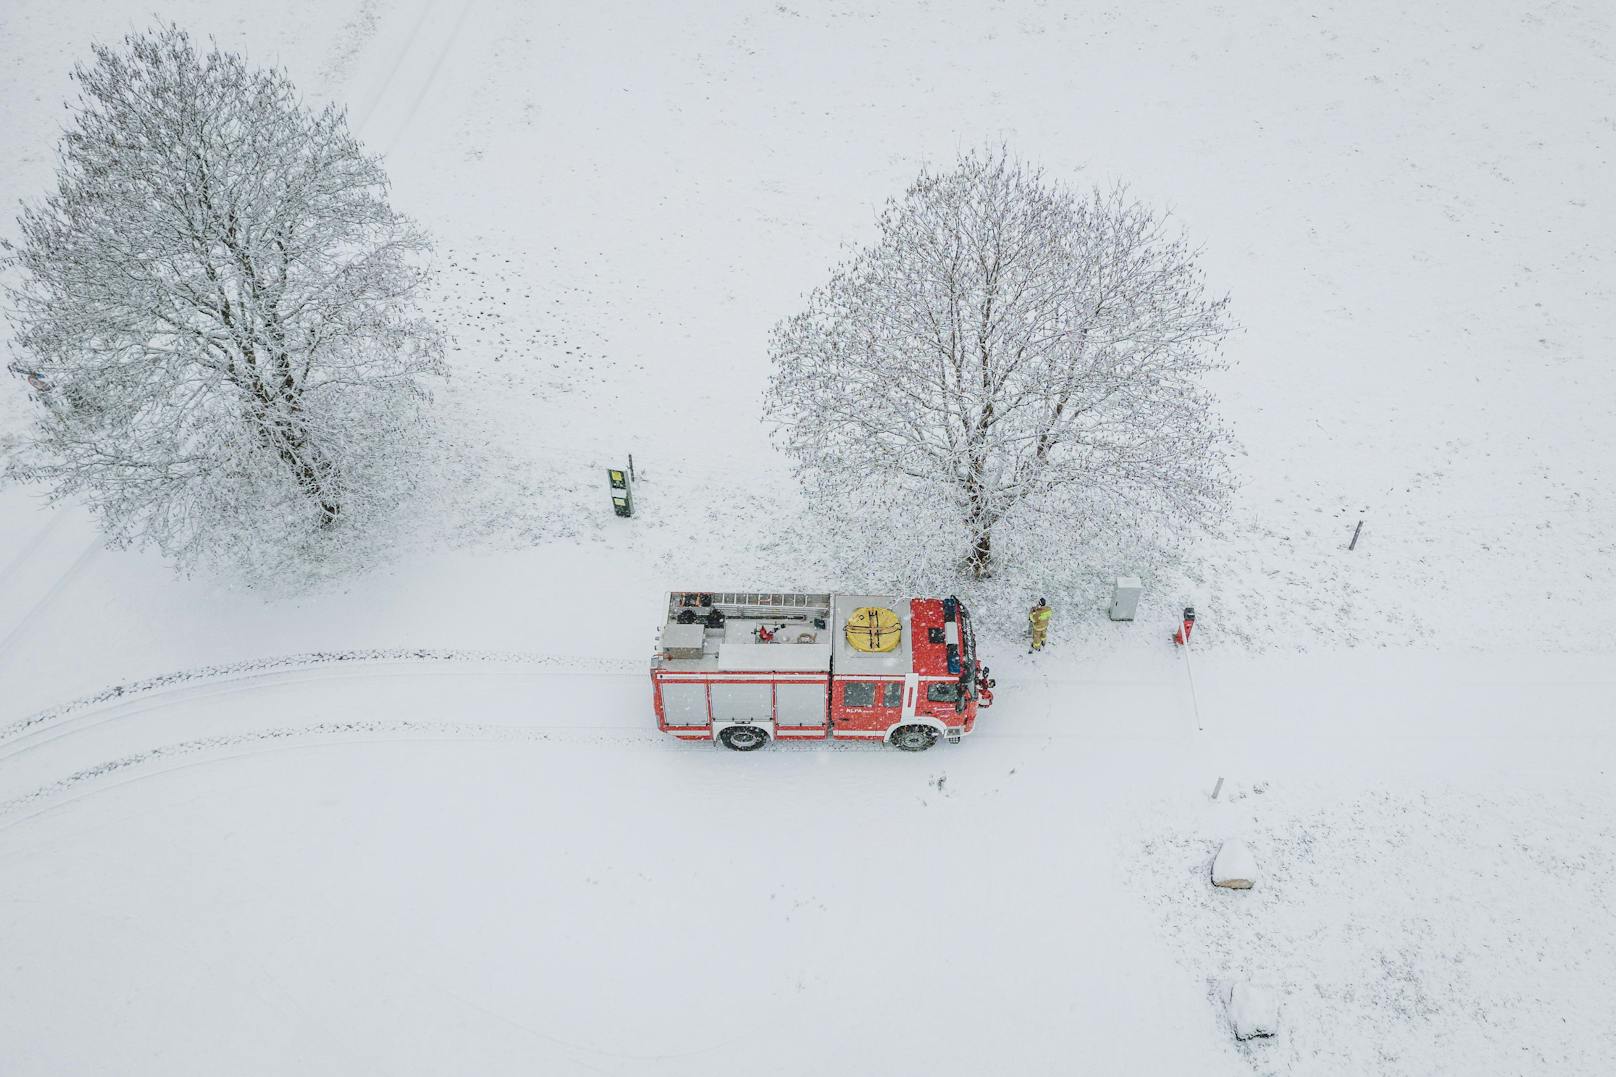 Feuerwehr Fahrzeug im Einsatz im Schnee, aufgenommen am 22. November 2022 in Kaprun.